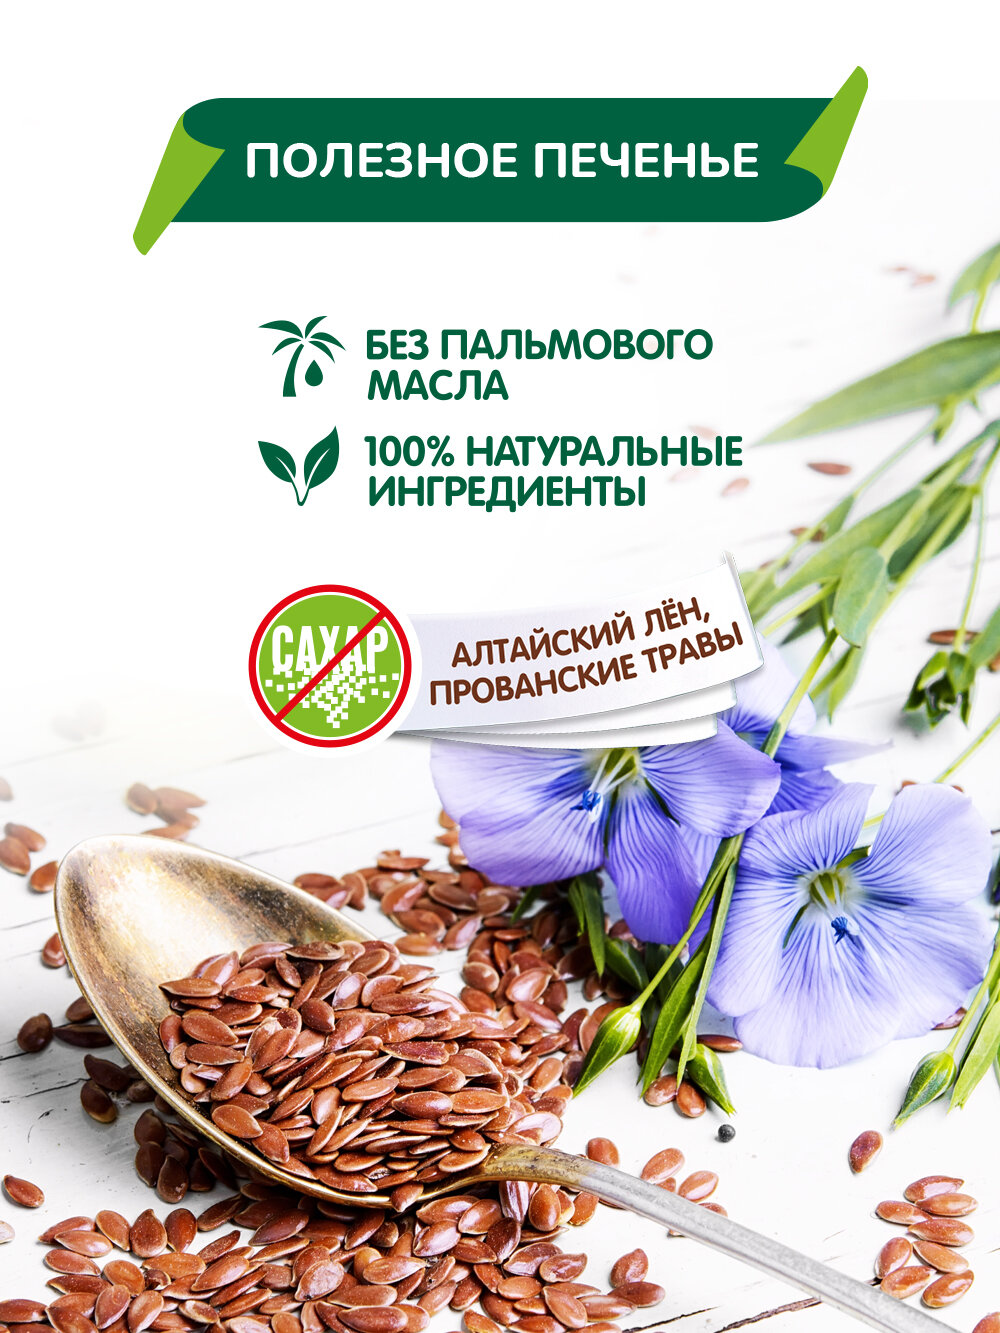 Печенье Vitok полезное натуральное без сахара с семенами льна и прованскими травами, 2 шт по 450 г